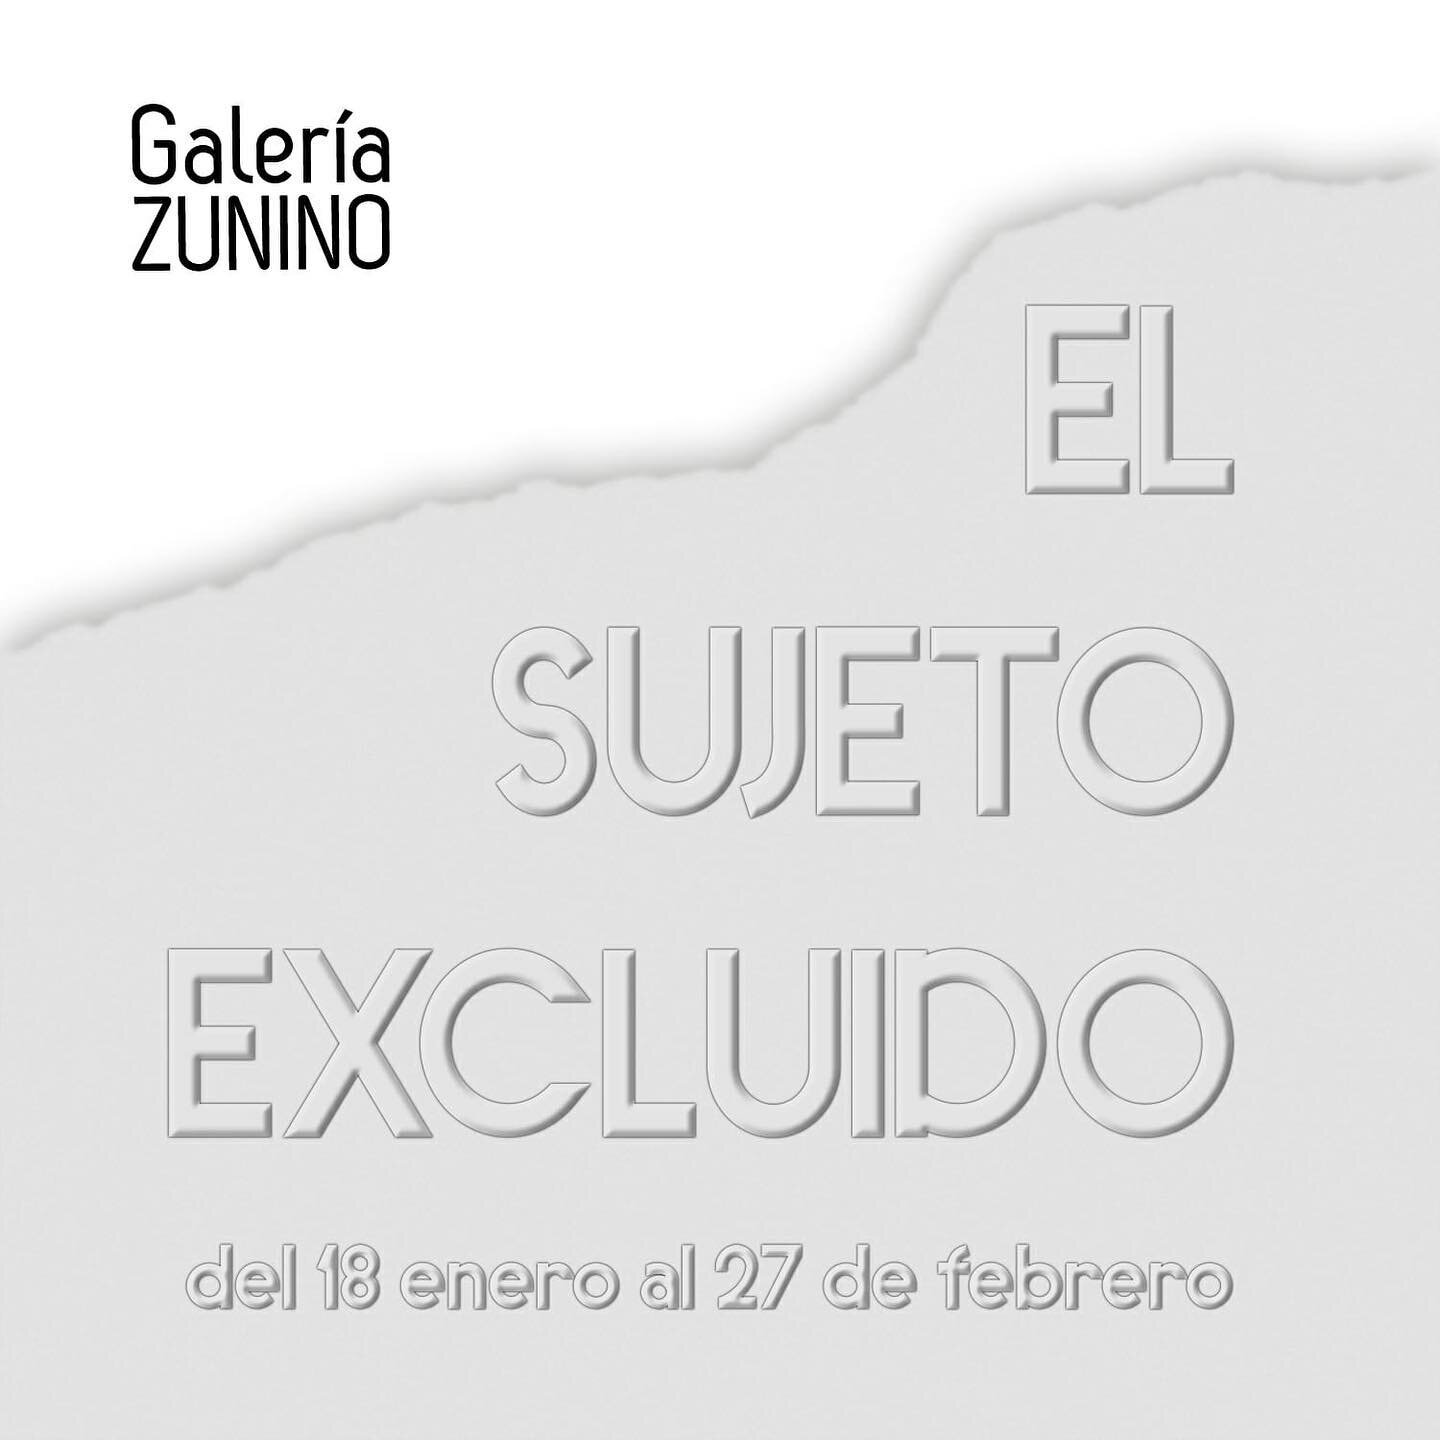 Nos alegra anunciar que colaboramos con la @galeriazunino en la exposición &ldquo;𝗘𝗹 𝘀𝘂𝗷𝗲𝘁𝗼 𝗲𝘅𝗰𝗹𝘂𝗶𝗱𝗼&rdquo; que se inaugura mañana en Sevilla. Podréis disfrutar de las obras de nuestro querido @fernandobayona junto a las de @beasan